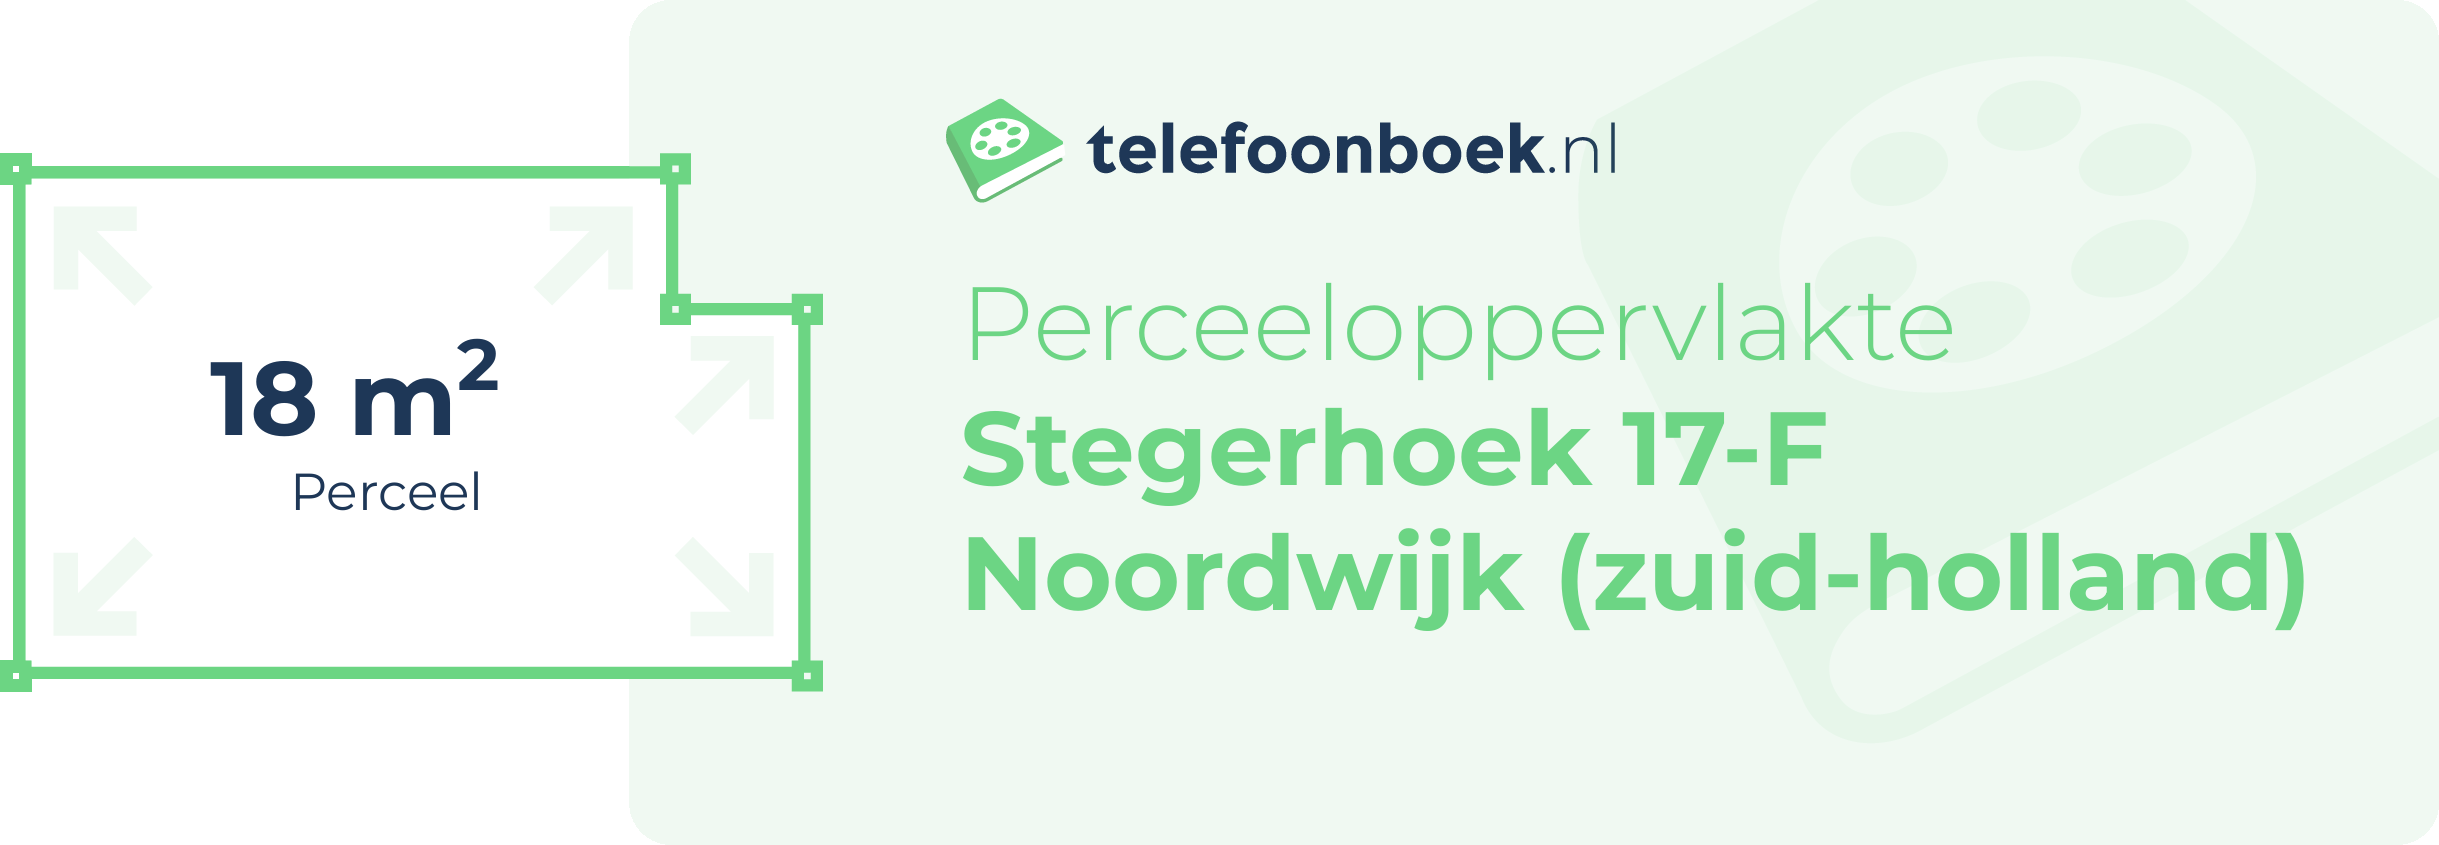 Perceeloppervlakte Stegerhoek 17-F Noordwijk (Zuid-Holland)